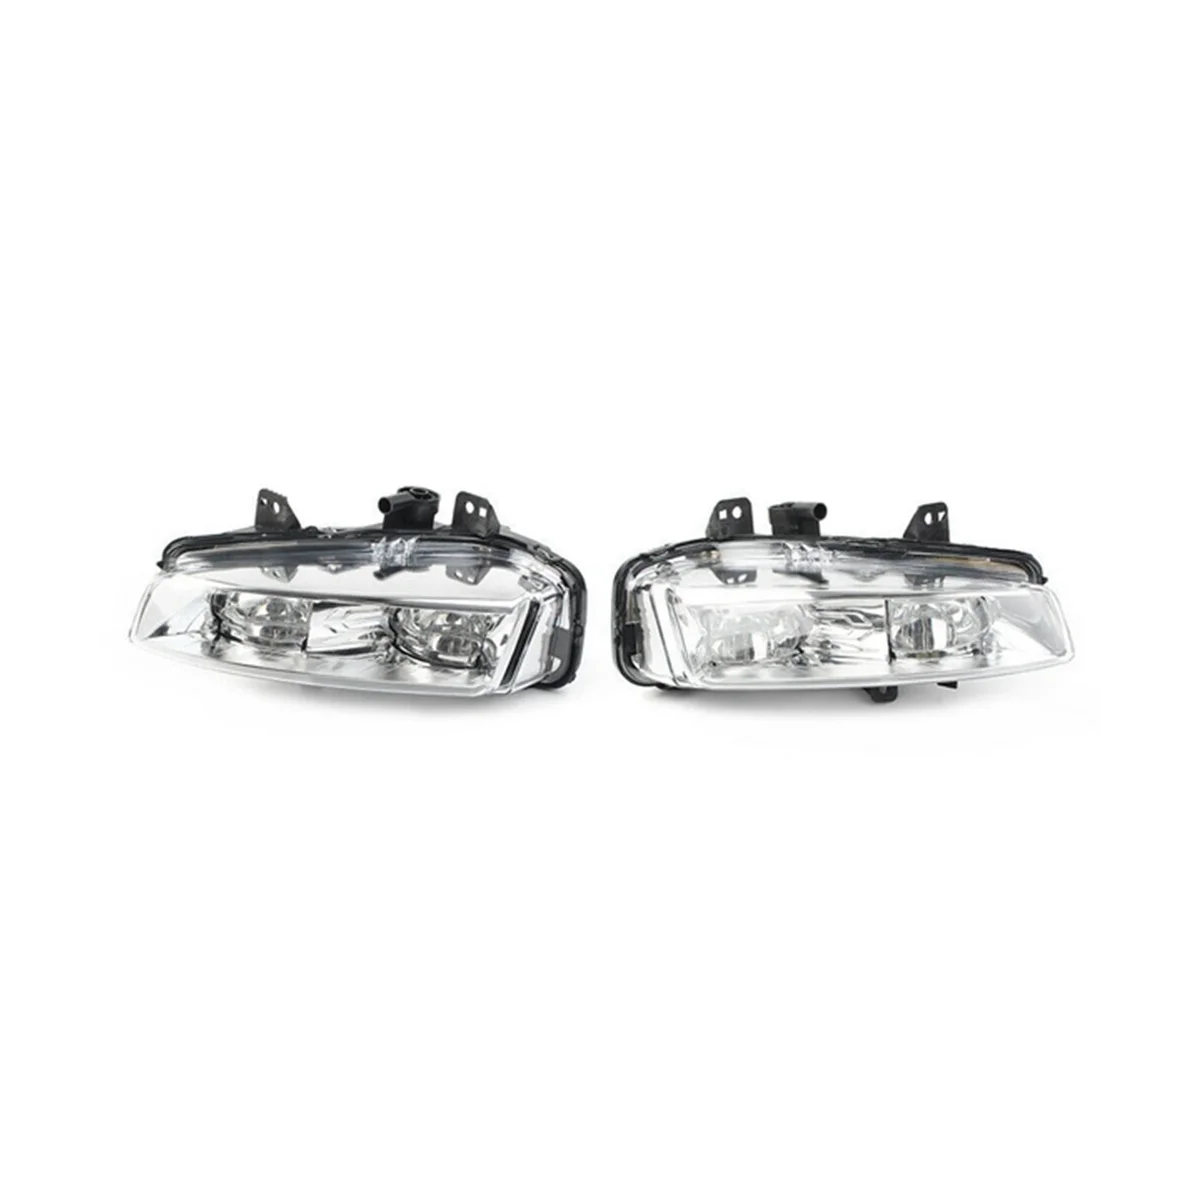 

LR026089 LR026090 Front Bumper Daytime Running Lights LED Front Fog Lights Automotive for Range Rover Evoque 2011-2015